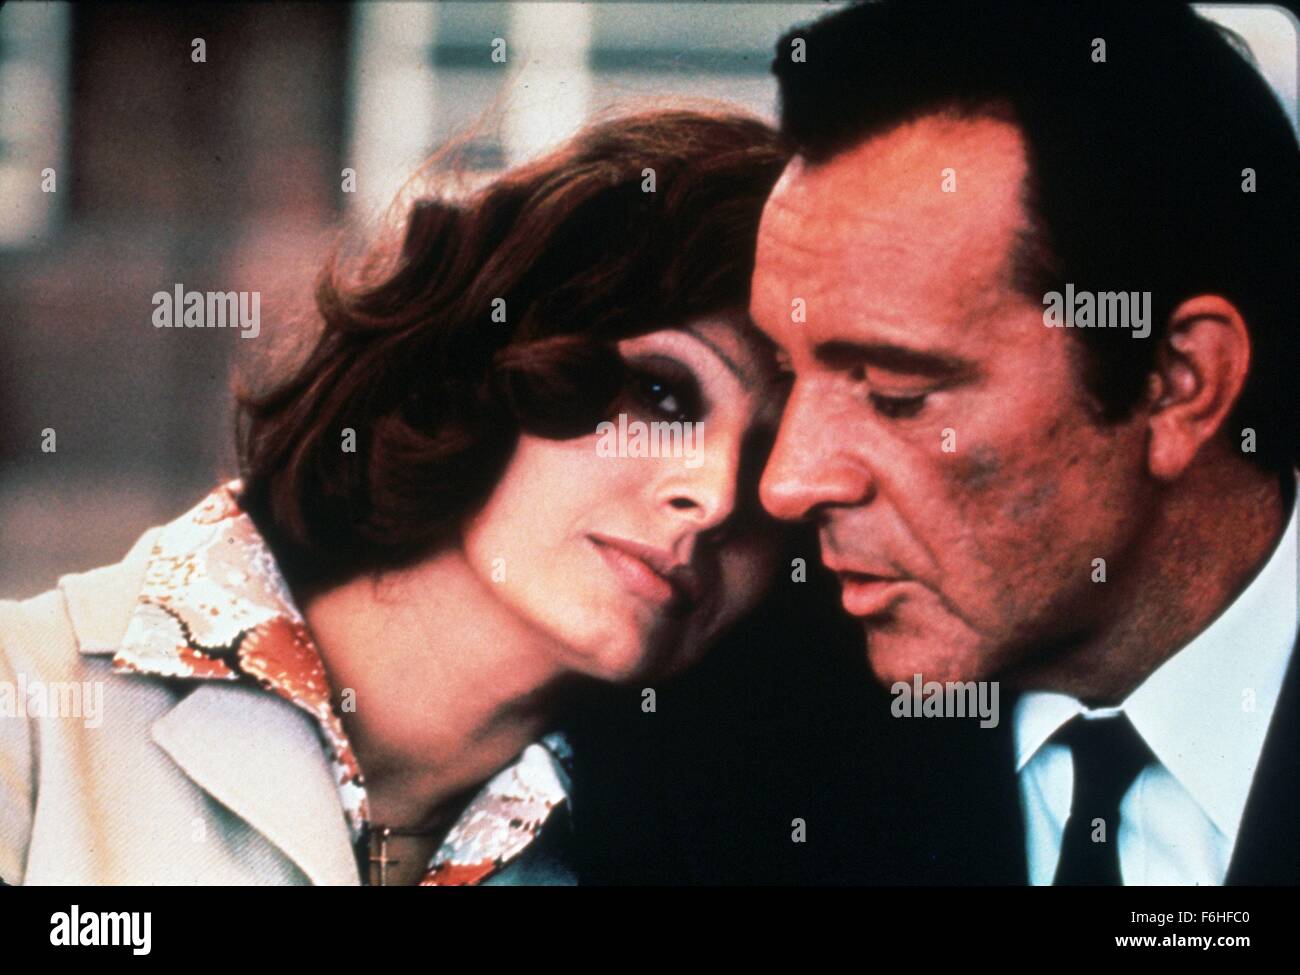 1974, il titolo del film: breve incontro, Direttore: ALAN PONTI, nella foto: ALAN PONTI, Richard Burton, Sophia Loren, romanticismo, intima, la testa sulla spalla, ombretto. (Credito Immagine: SNAP) Foto Stock